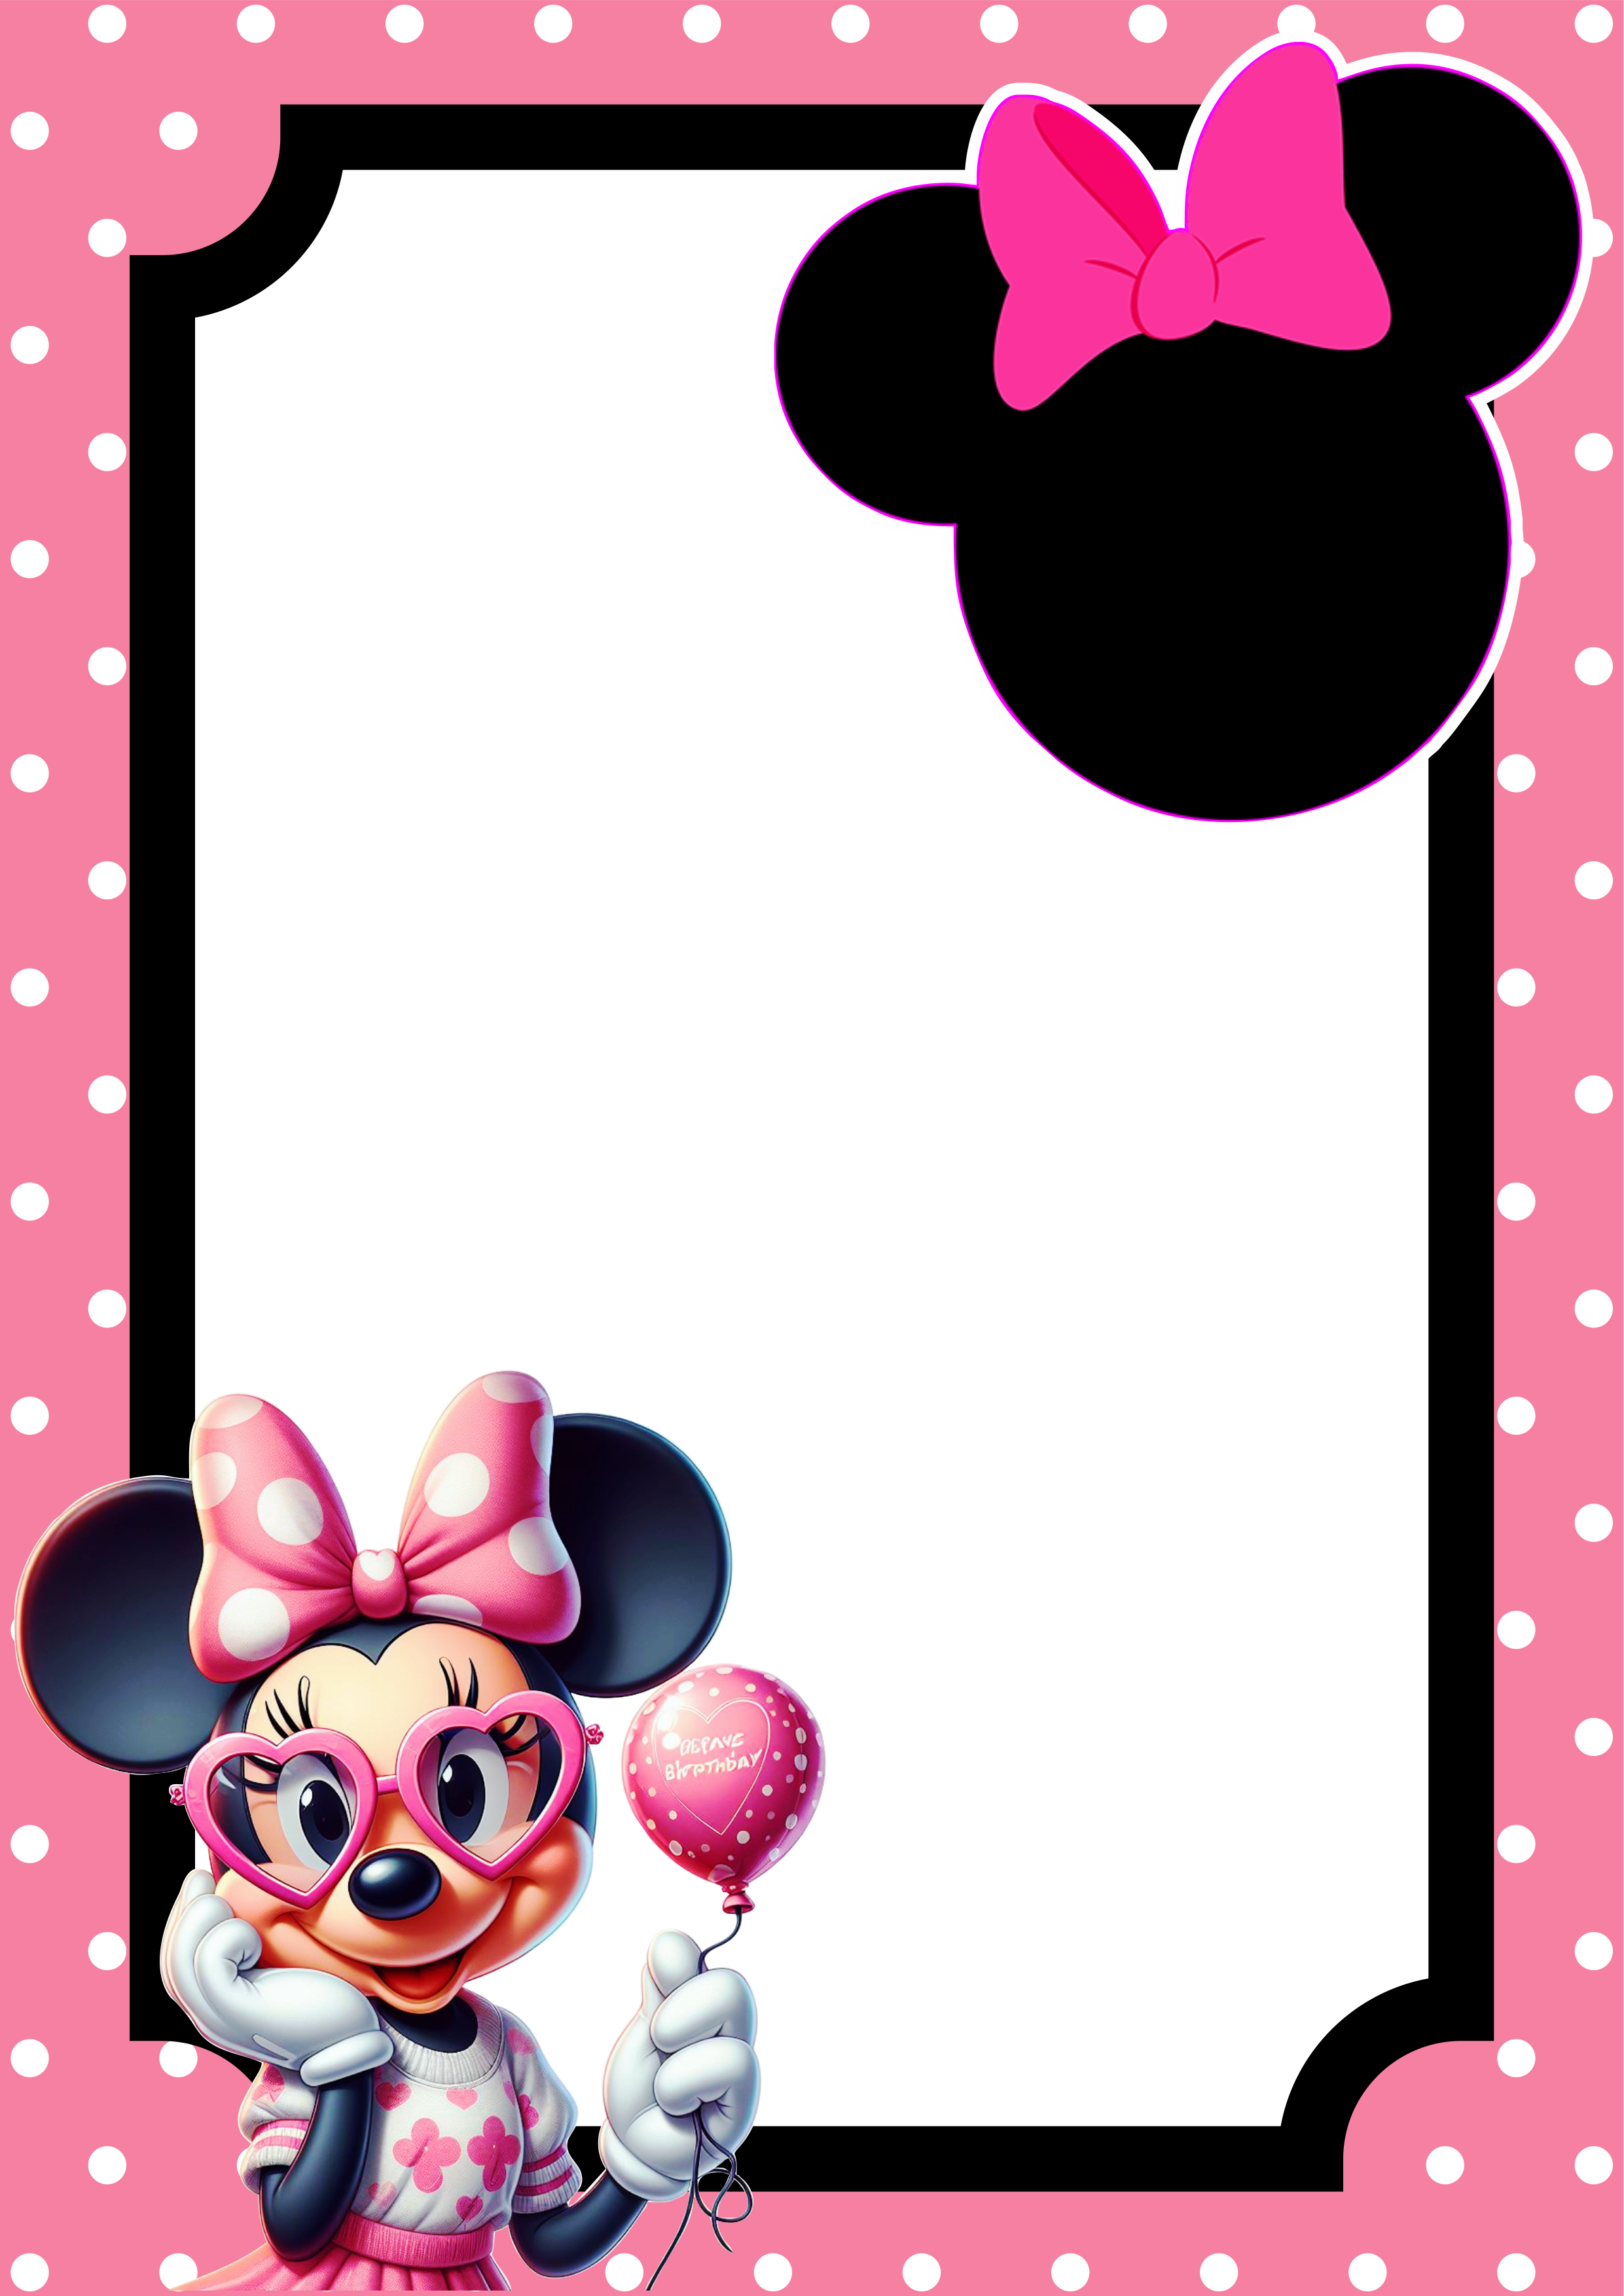 Convite virtual Minnie rosa molde pronto para editar e imprimir festa aniversário infantil Disney renda extra festinha decorada png